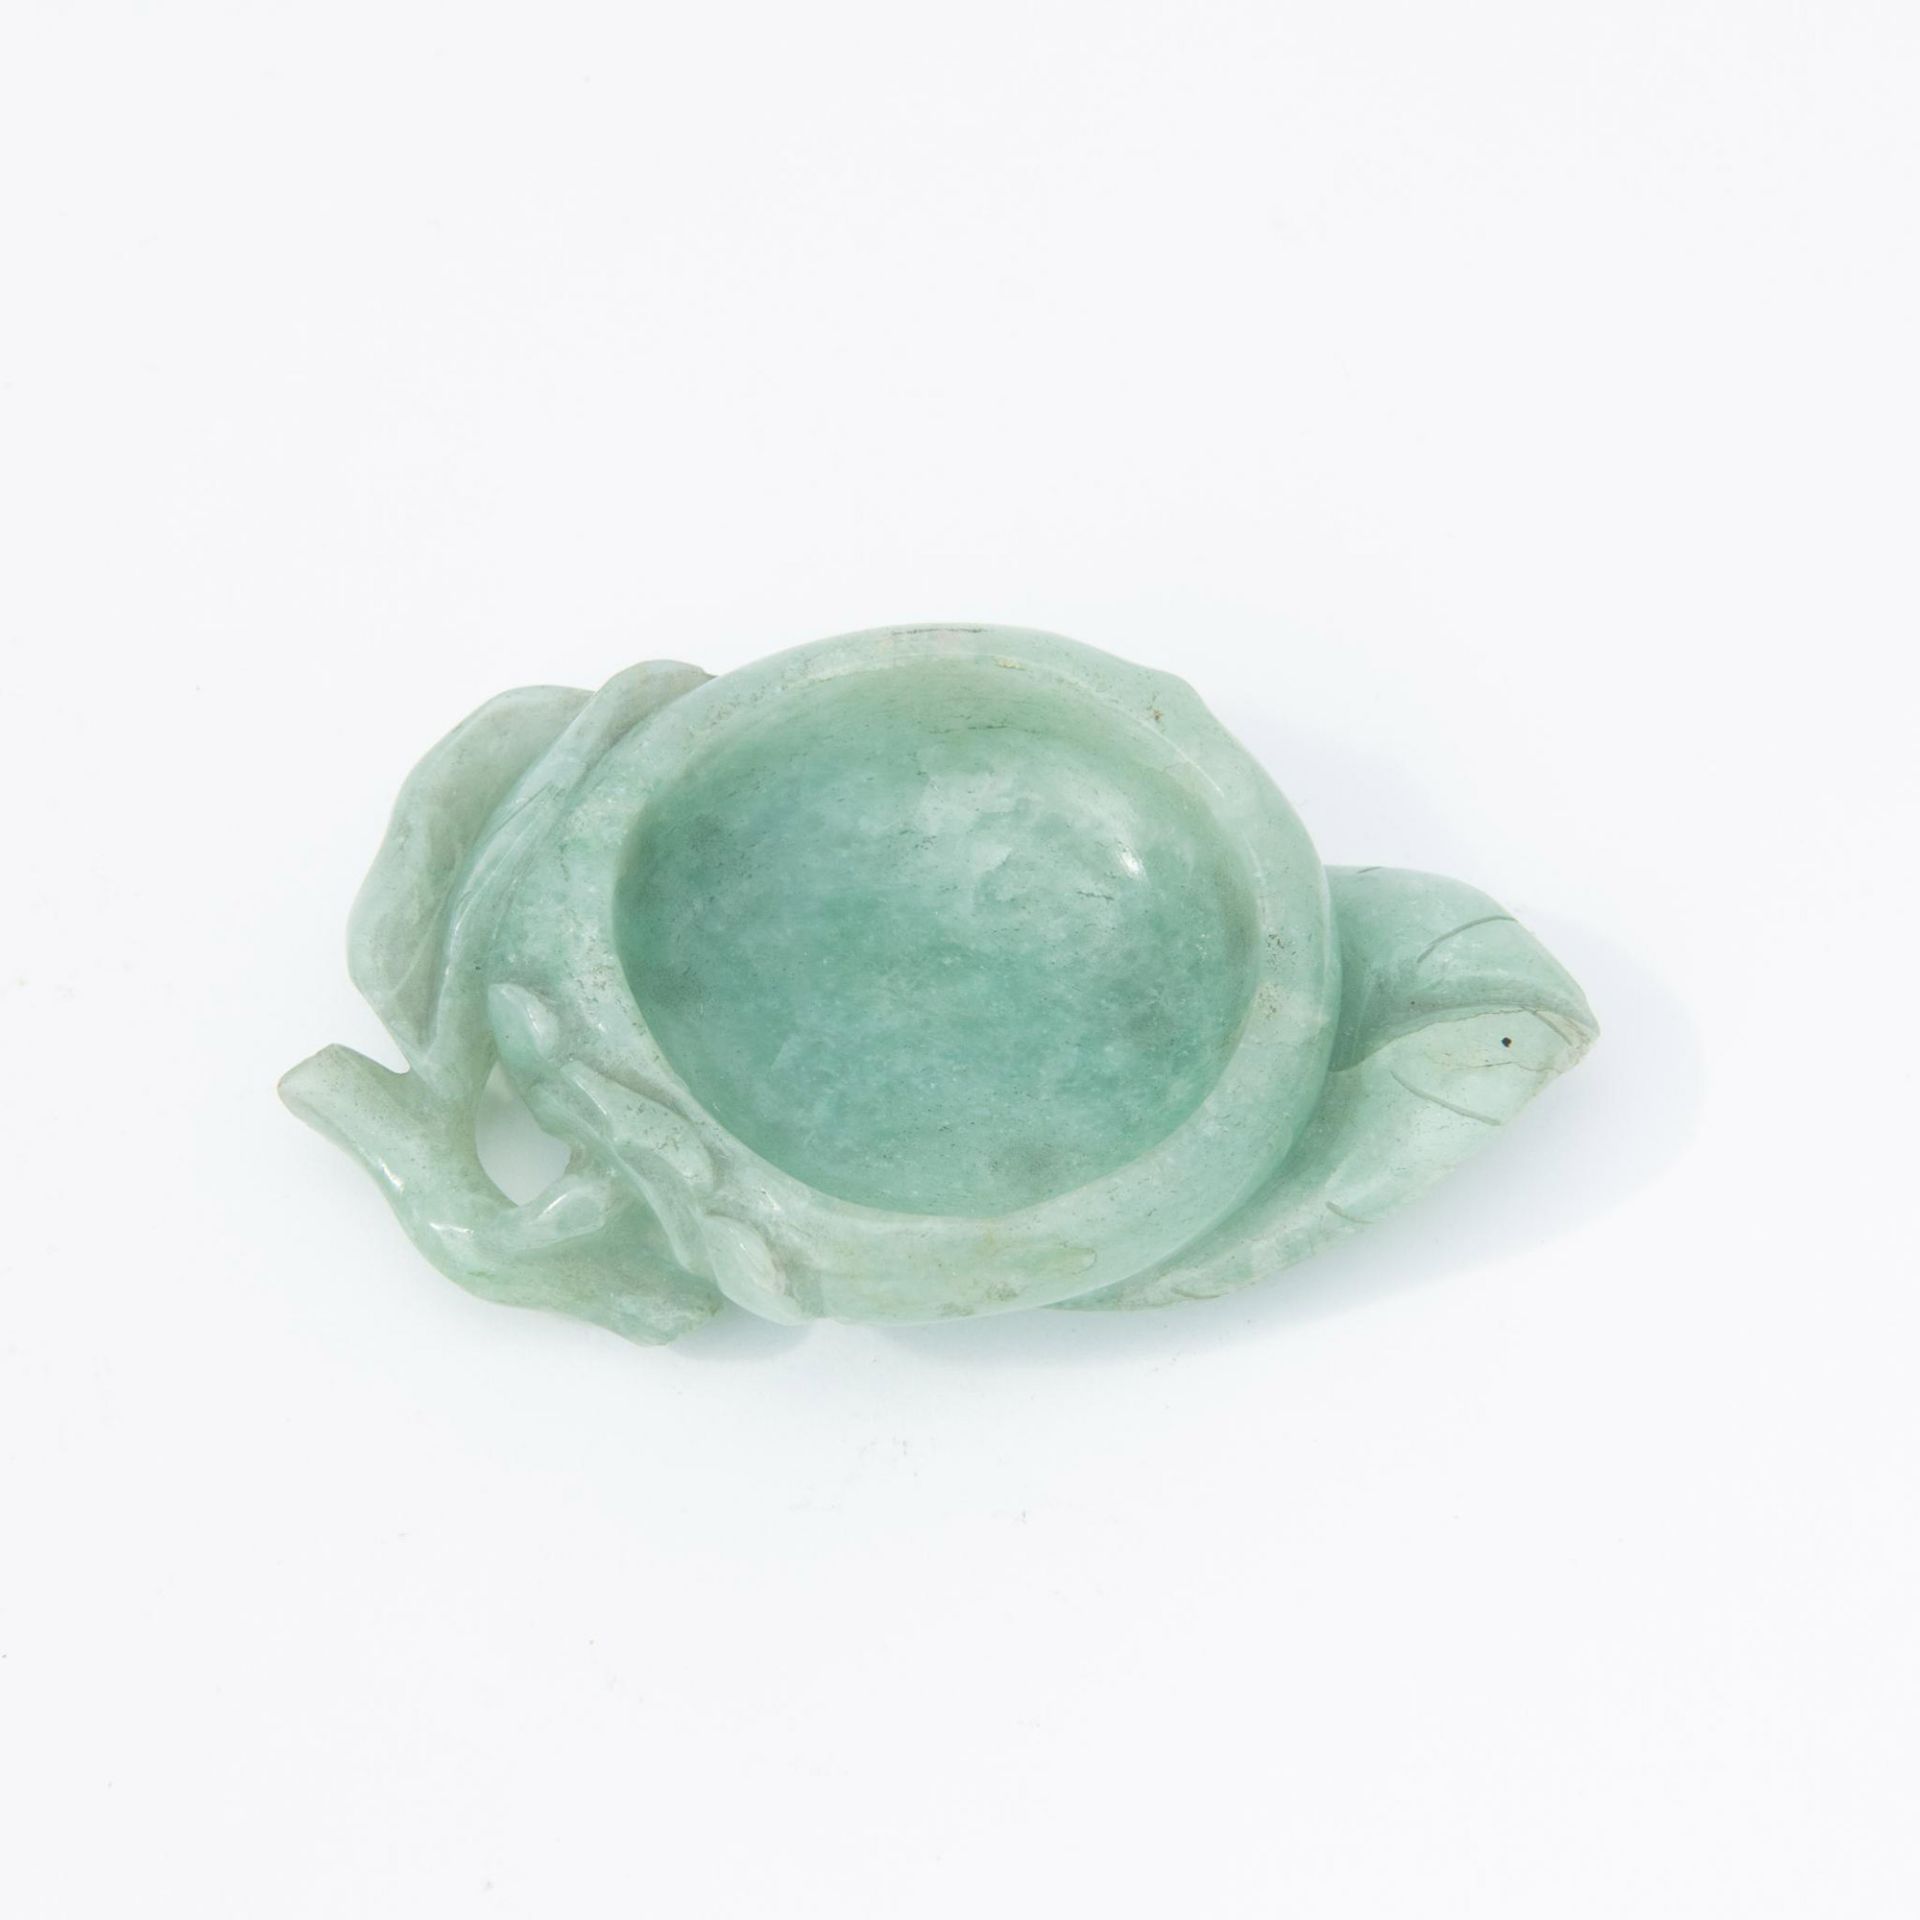 Antique Chinese Jadeite Lotus Water Bowl - Image 2 of 4